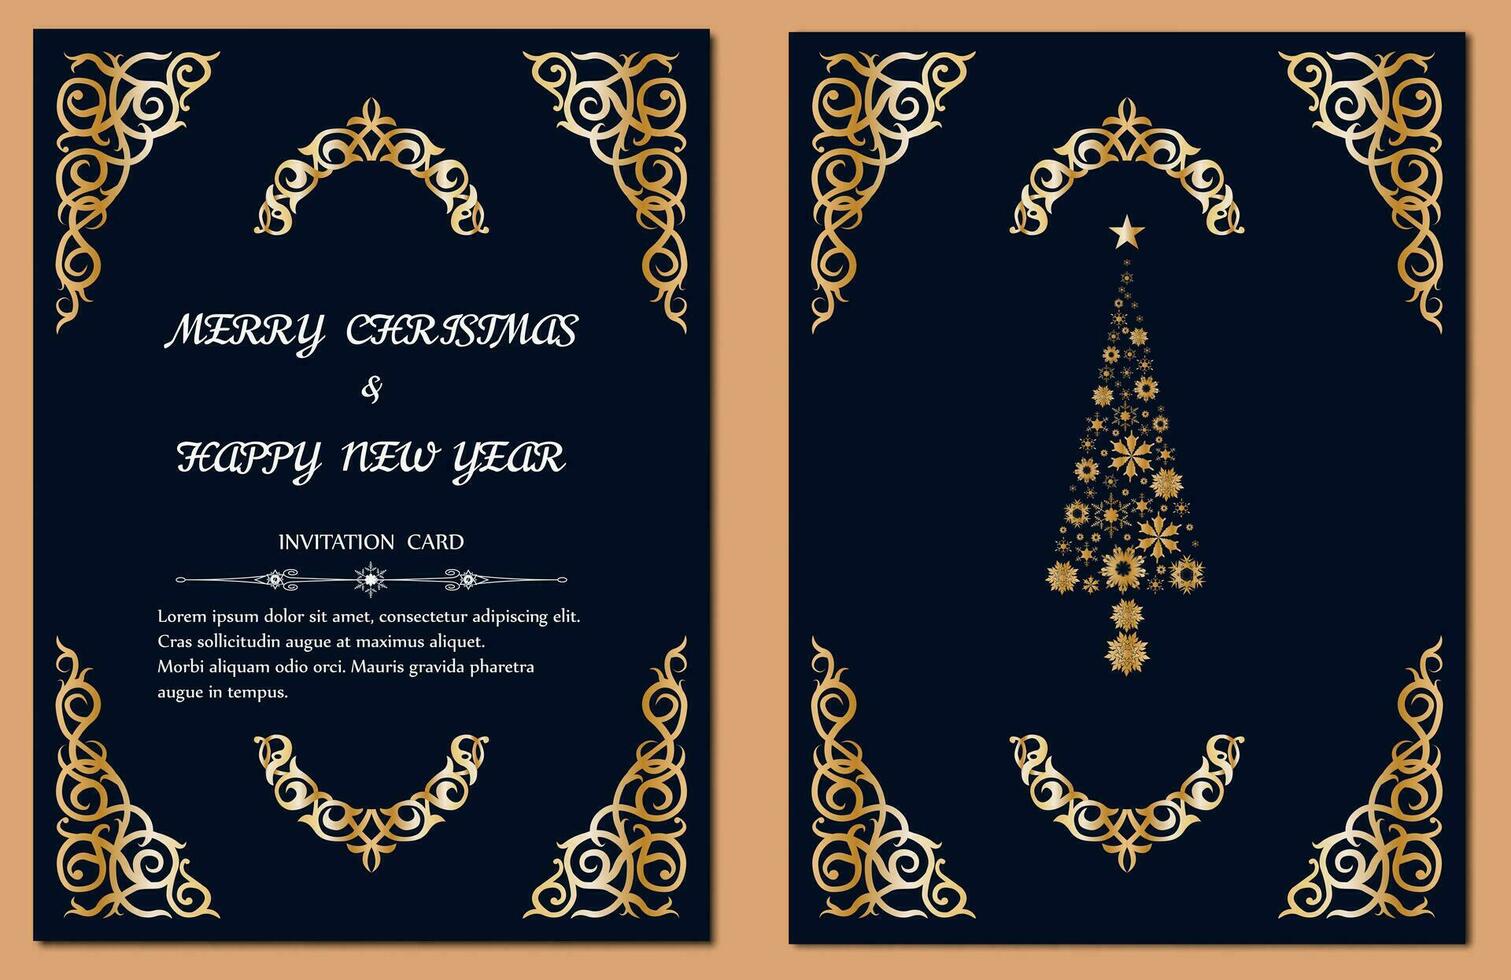 Vintage ▾ allegro Natale e contento nuovo anno saluto carta design con astratto Natale albero e ornamento. vettore illustrazione eps10